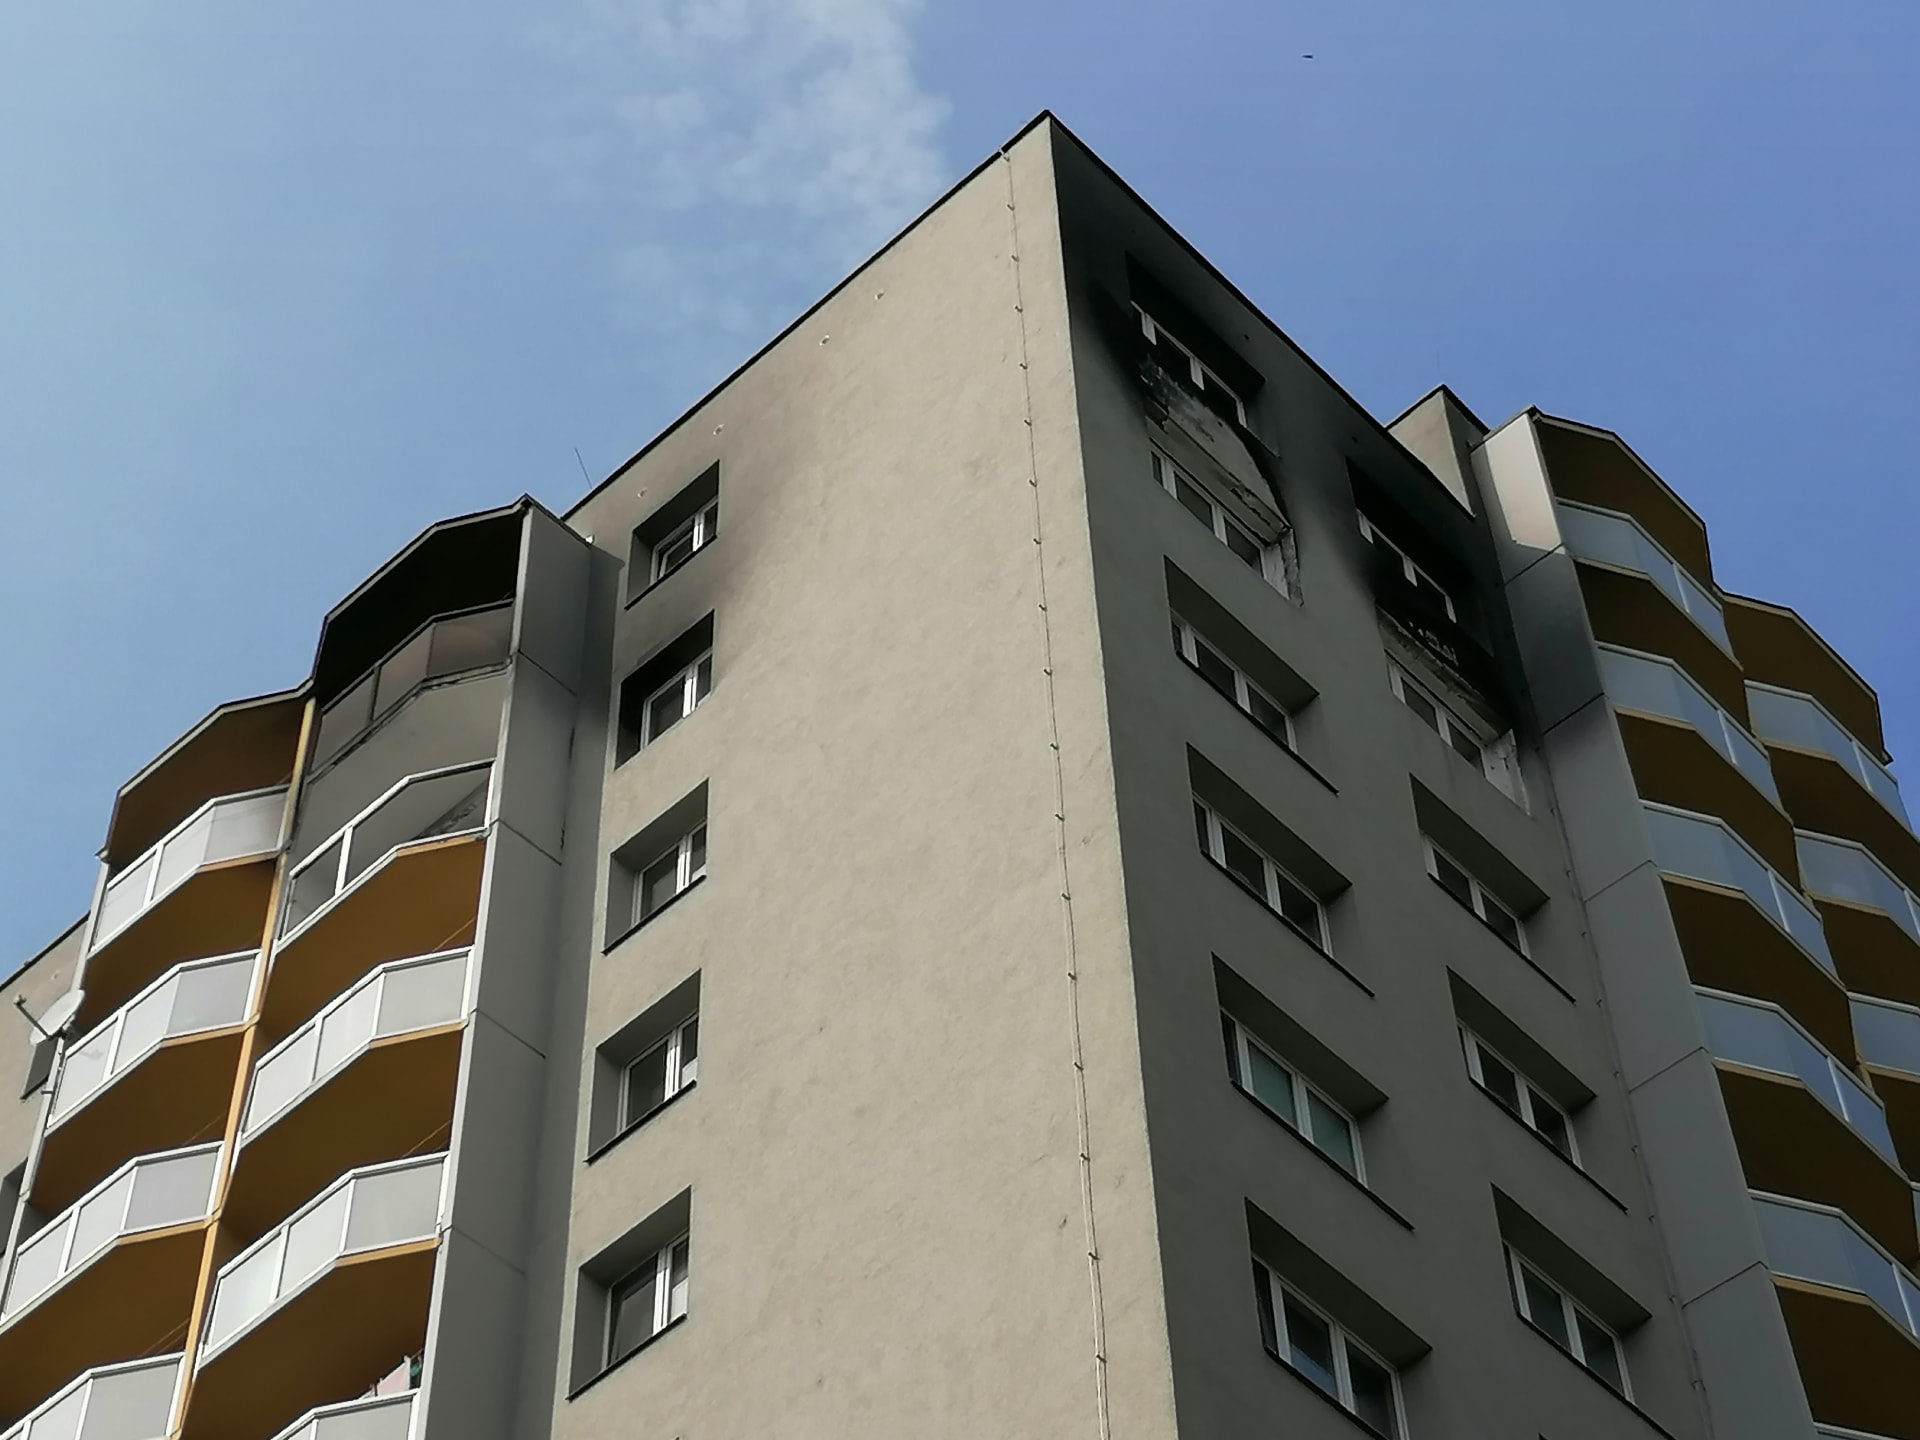 Vyhořelý byt v jedenáctém patře věžáku je téměř opraven, zvenku zůstávají stopy na fasádě